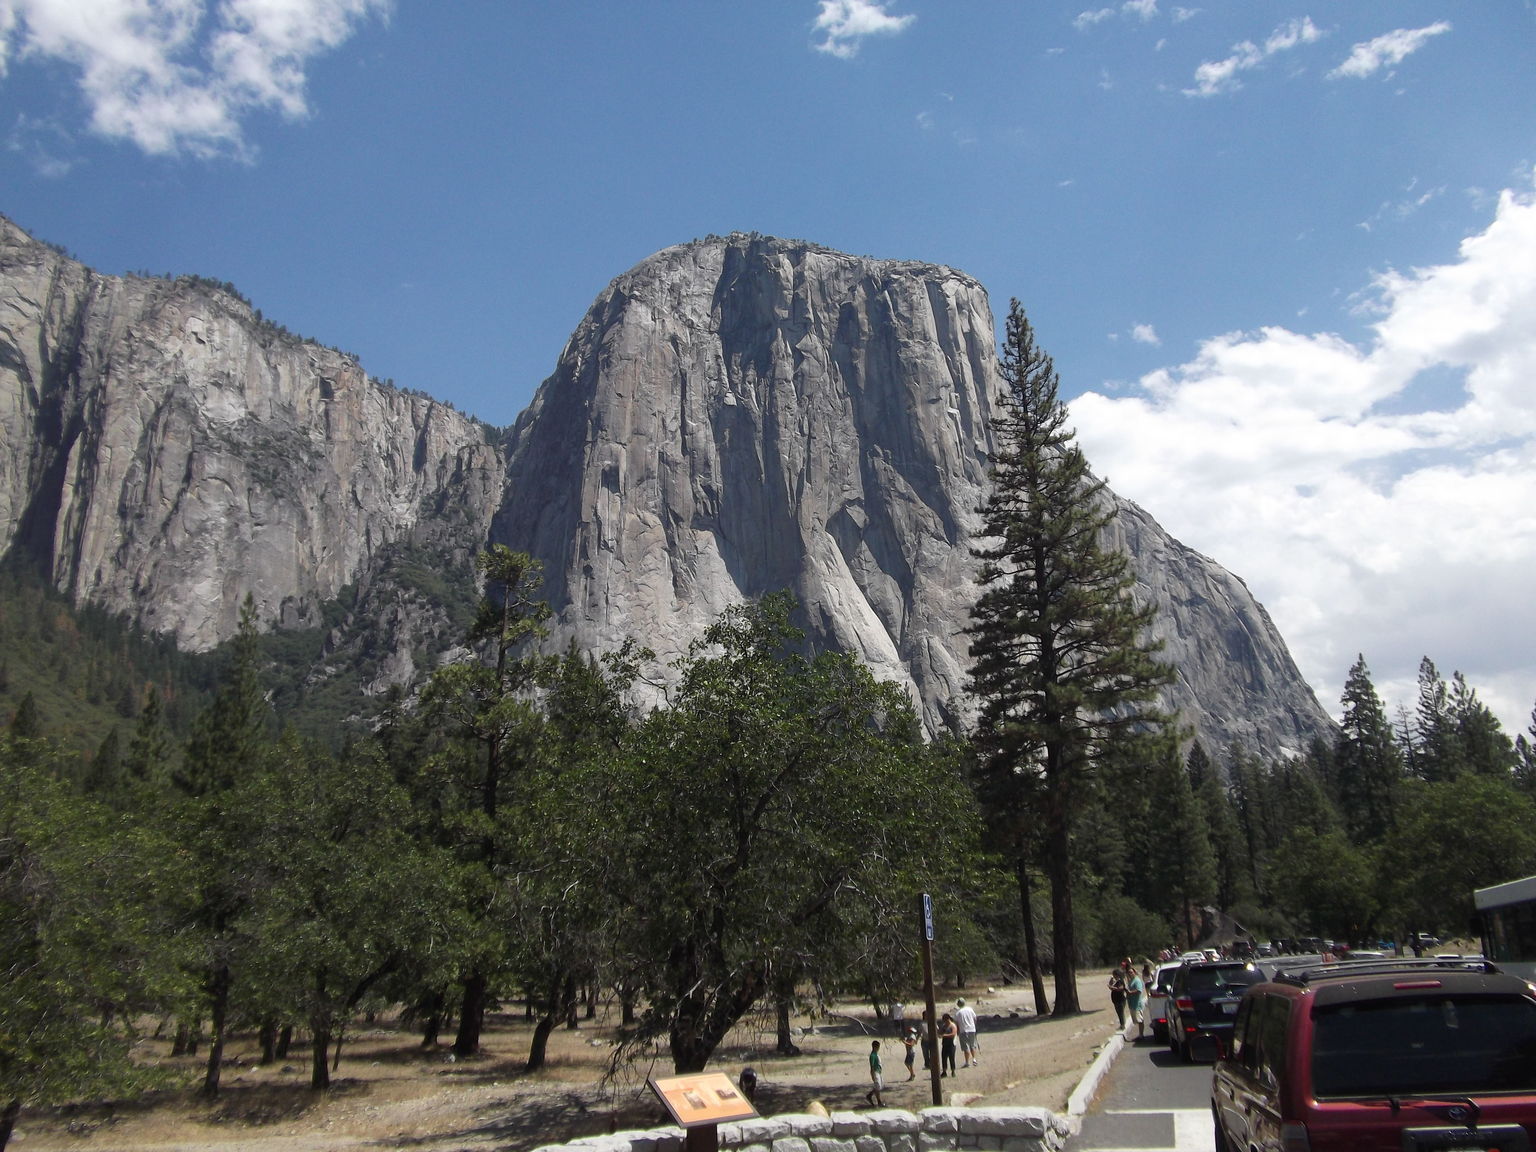 Yosemite at its greatist!